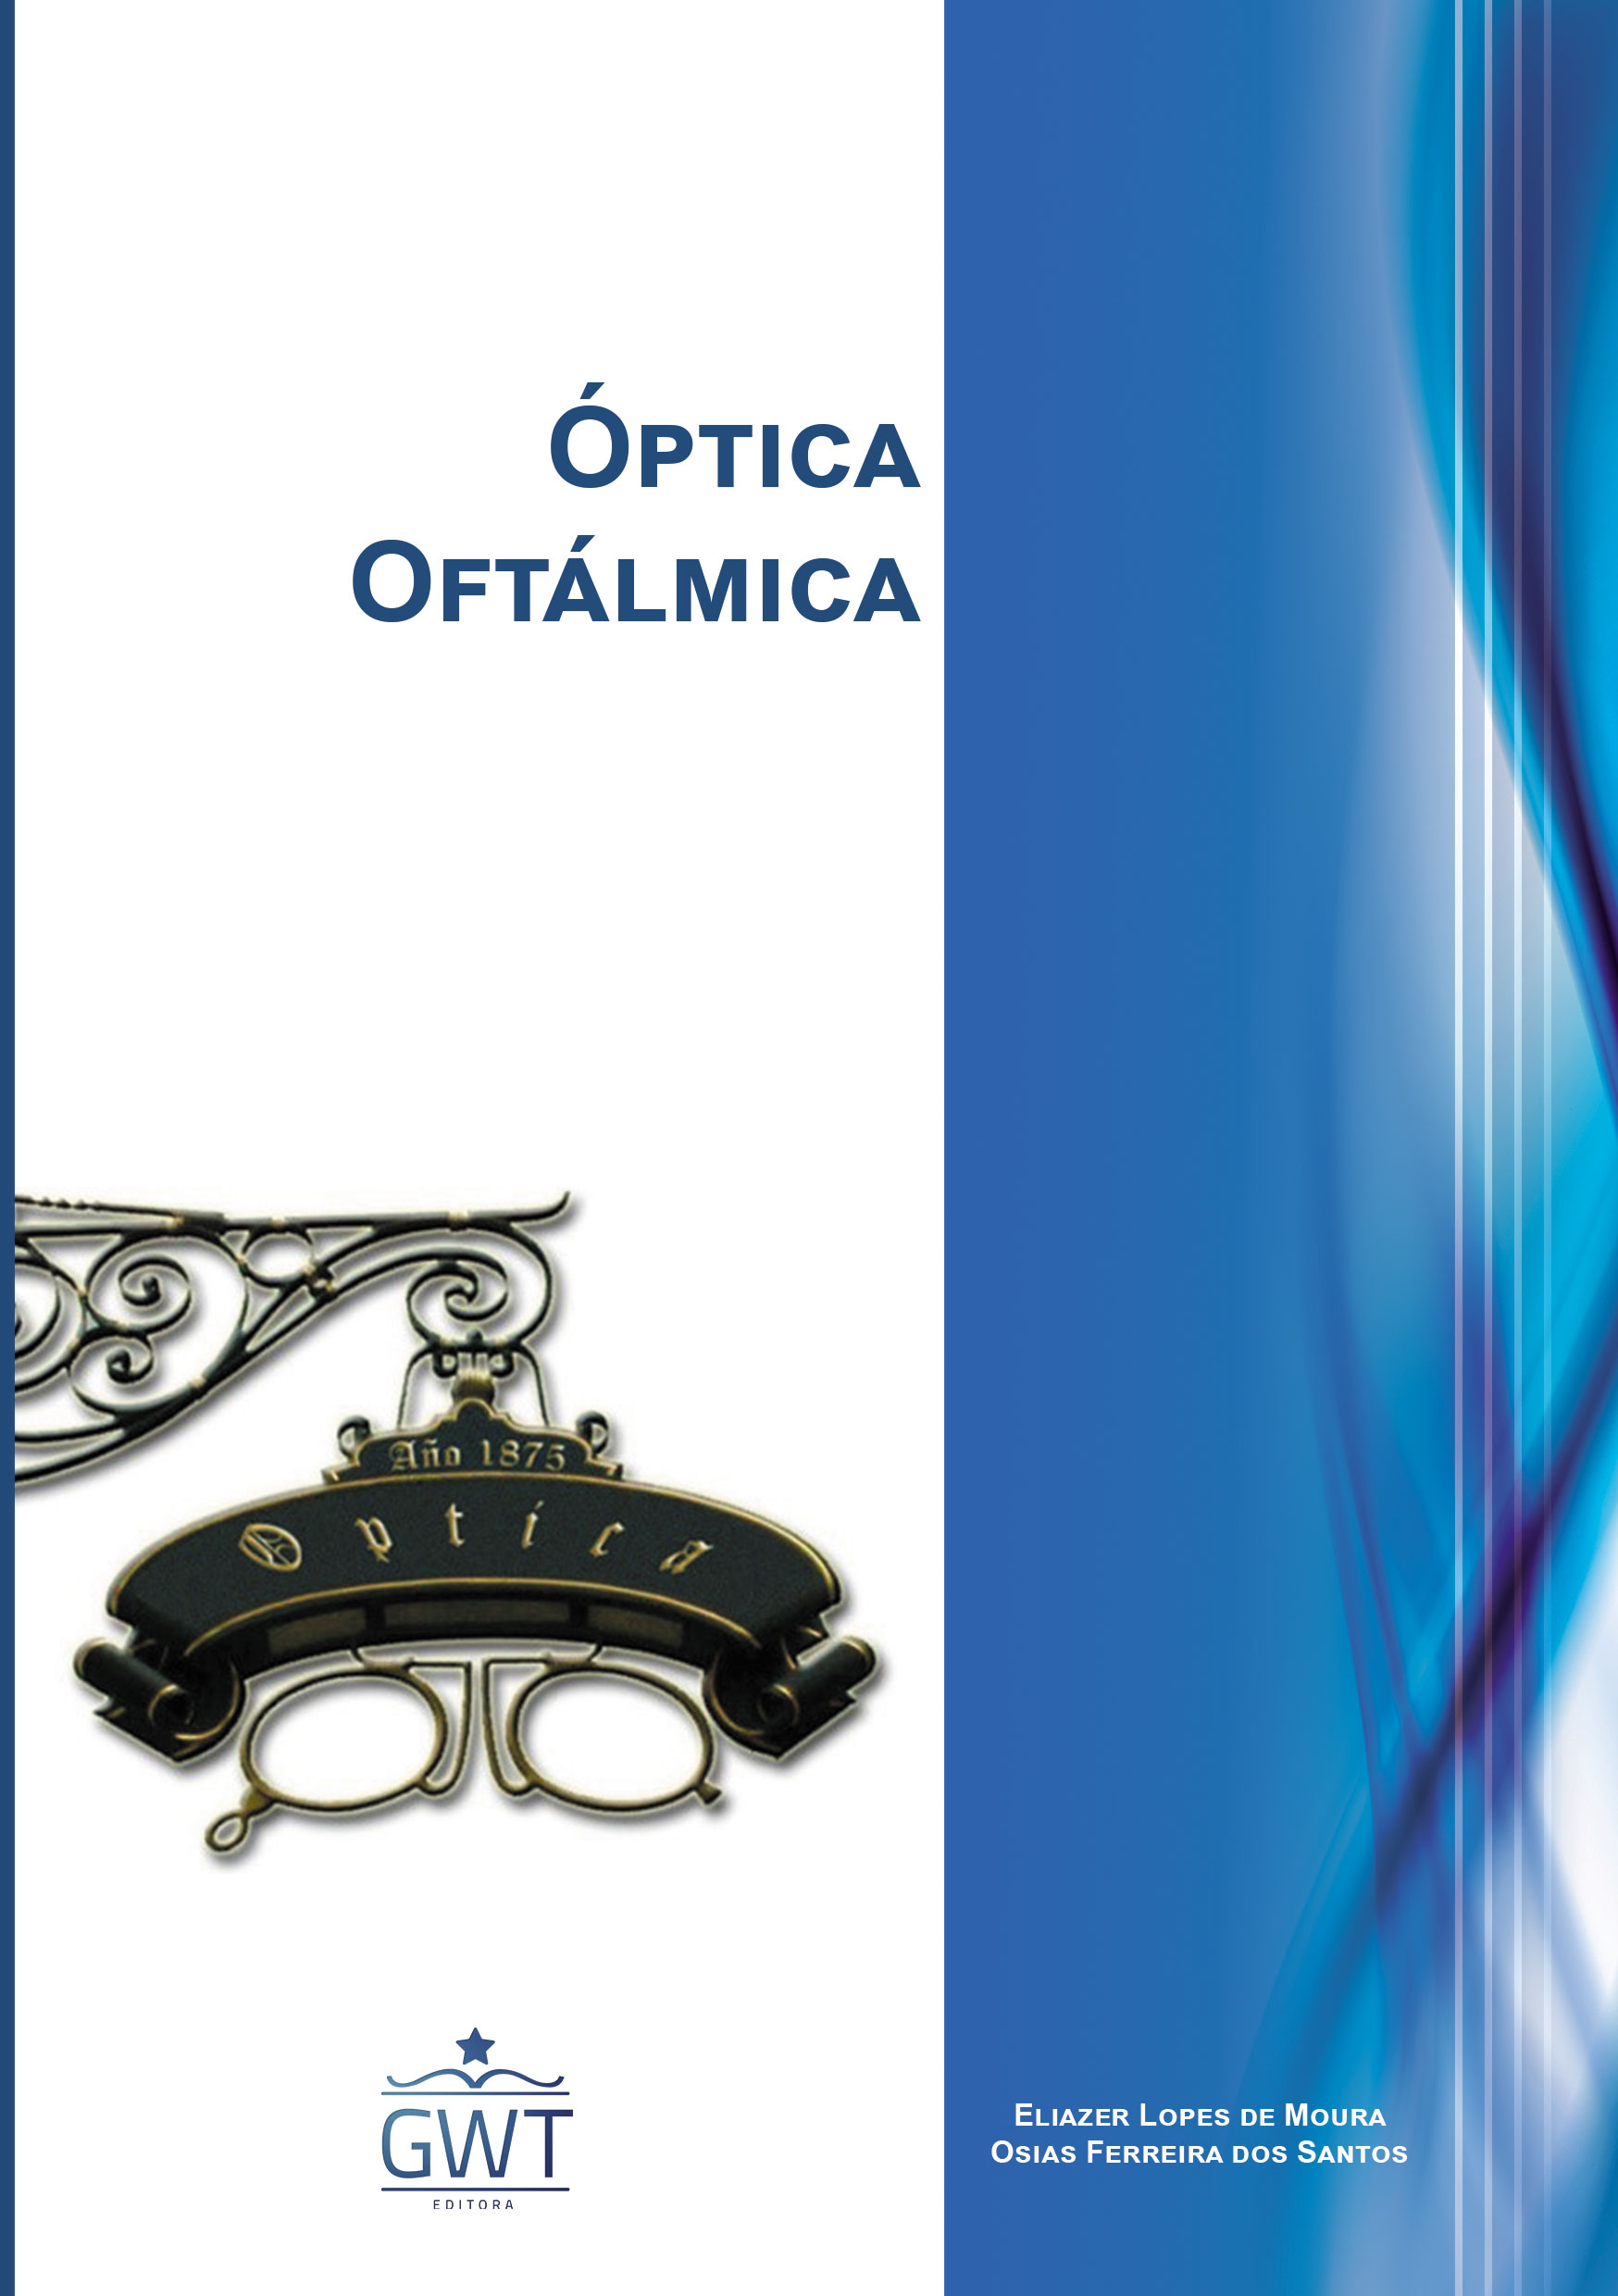 Capa-Óptica-Oftálmica-nova-logo.jpg